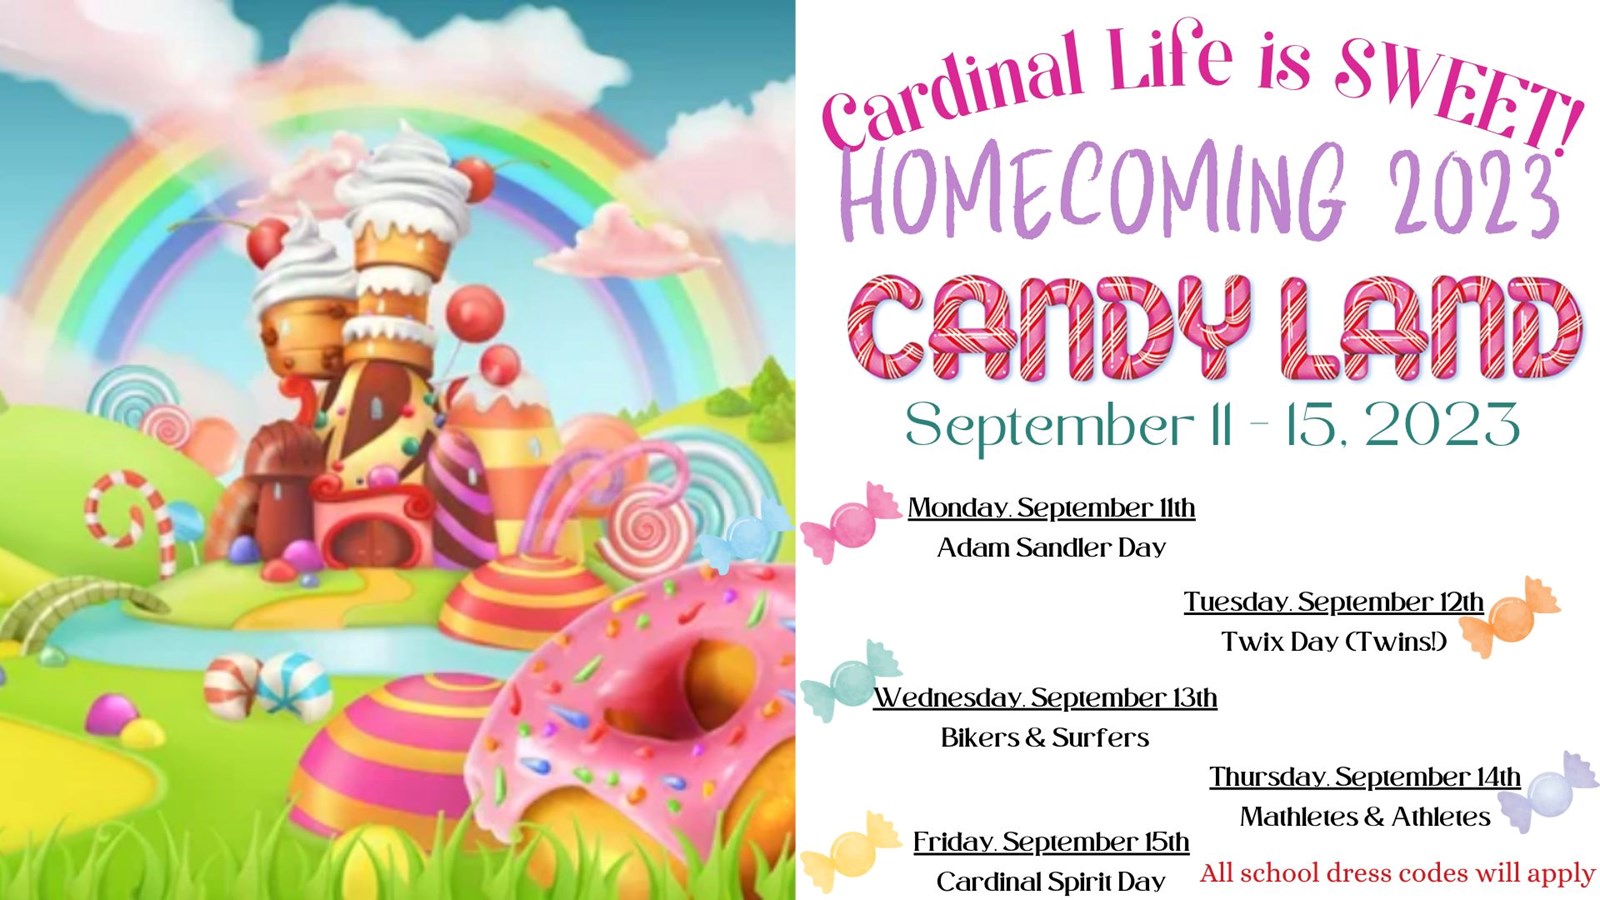 Homecoming 2023, Candyland, September 11-15, 2023